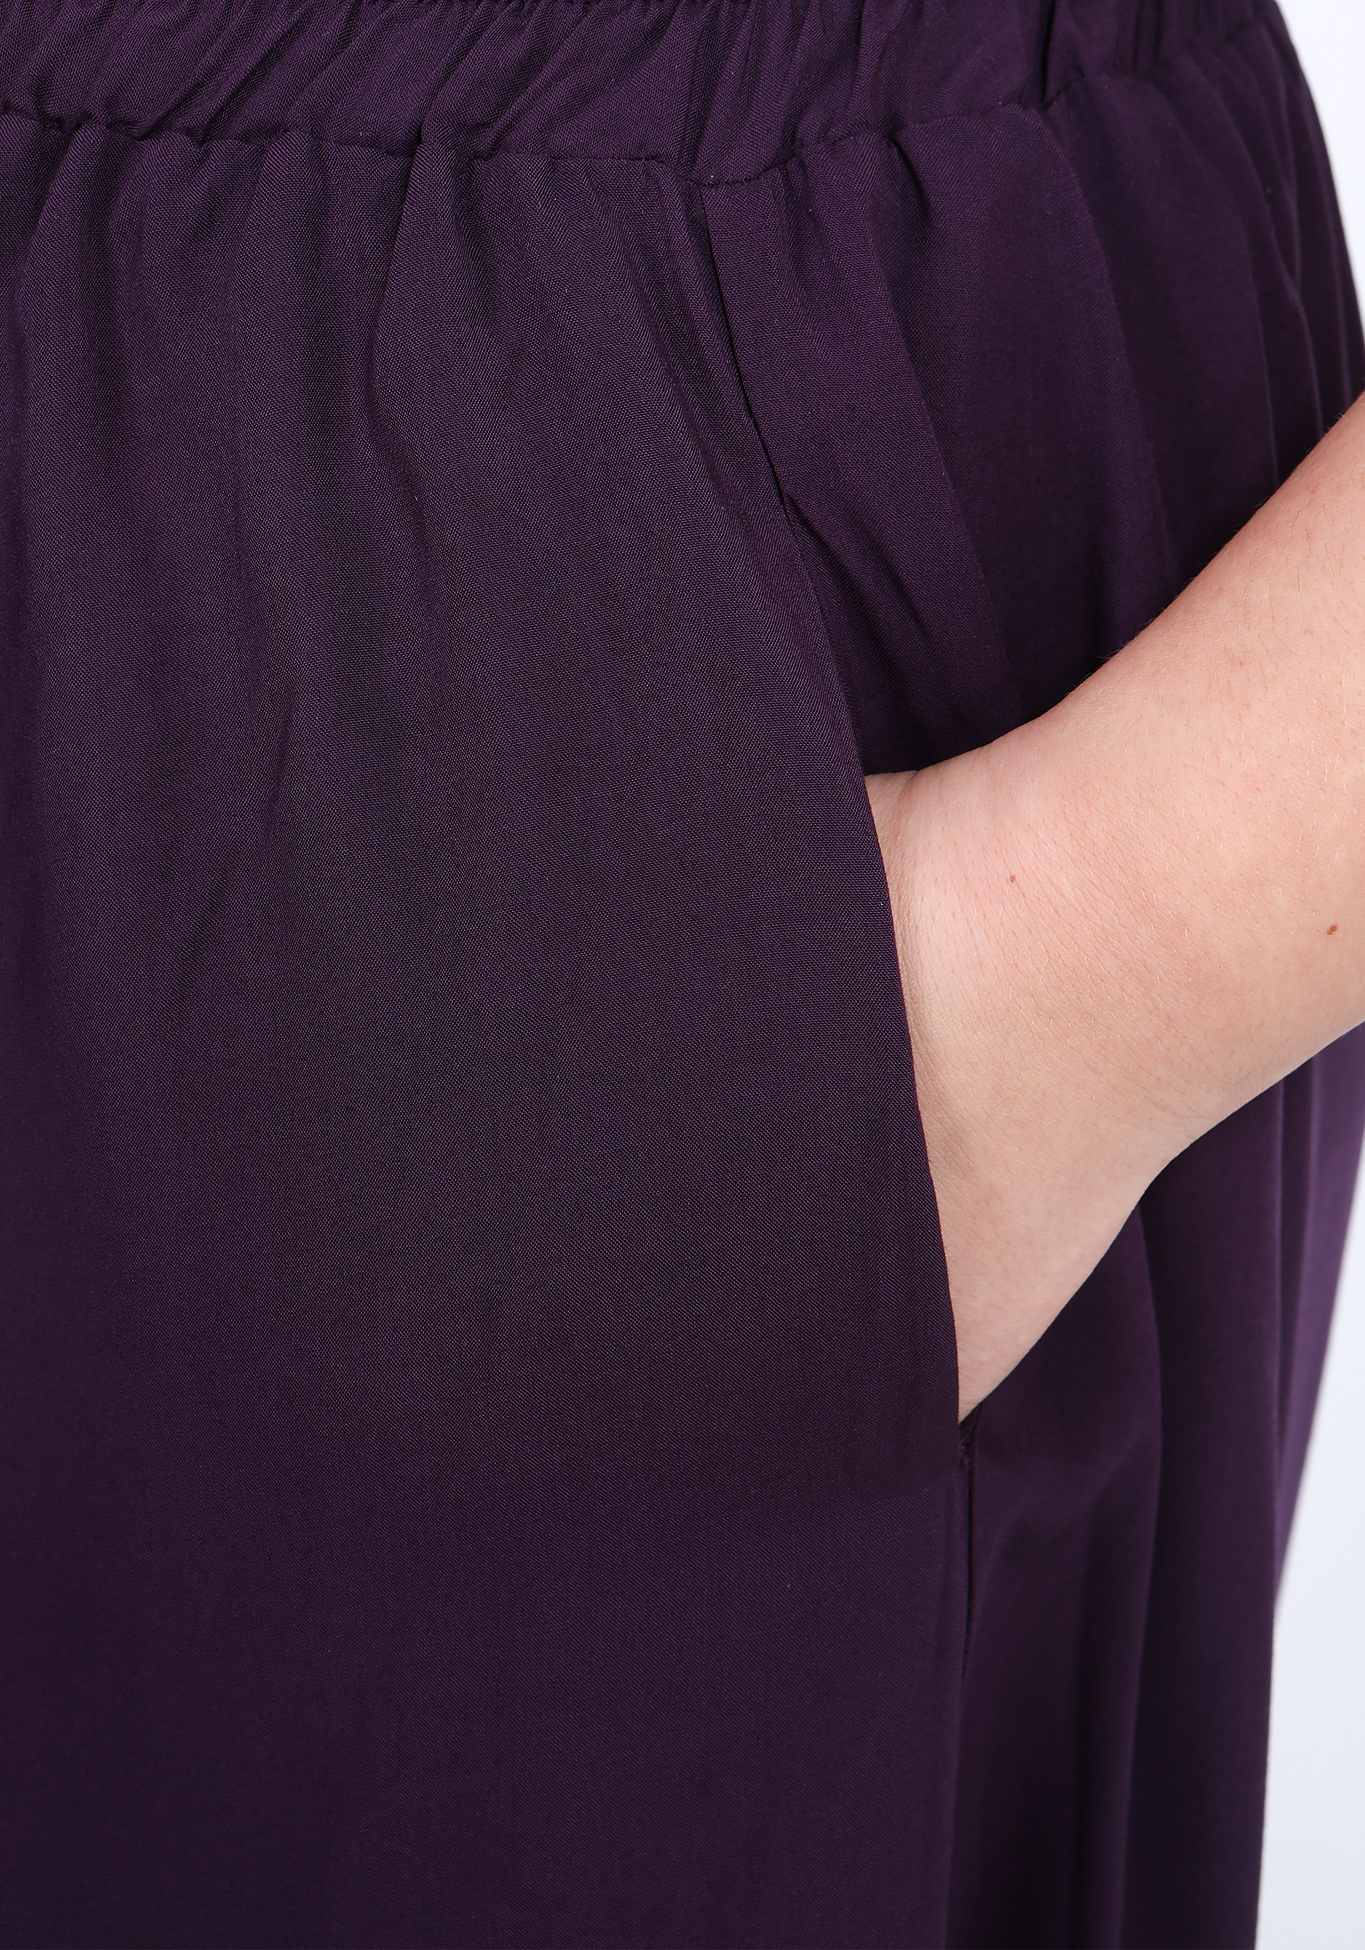 Брюки-кюлоты "Модная леди" Bianka Modeno, размер 54, цвет баклажановый - фото 6